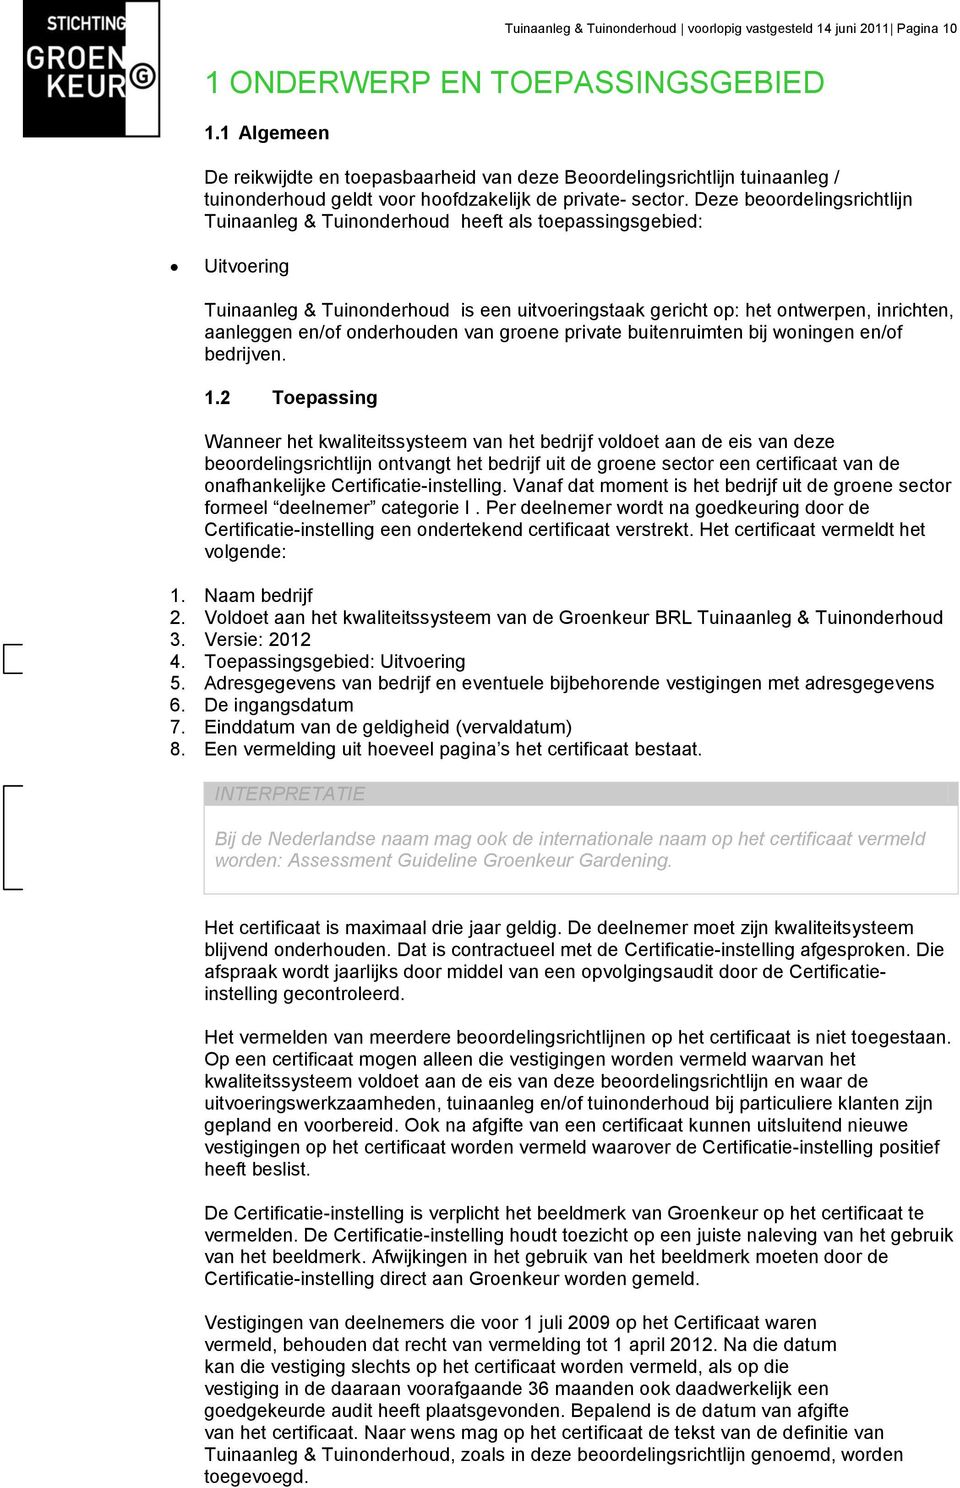 Deze beoordelingsrichtlijn Tuinaanleg & Tuinonderhoud heeft als toepassingsgebied: Uitvoering Tuinaanleg & Tuinonderhoud is een uitvoeringstaak gericht op: het ontwerpen, inrichten, aanleggen en/of